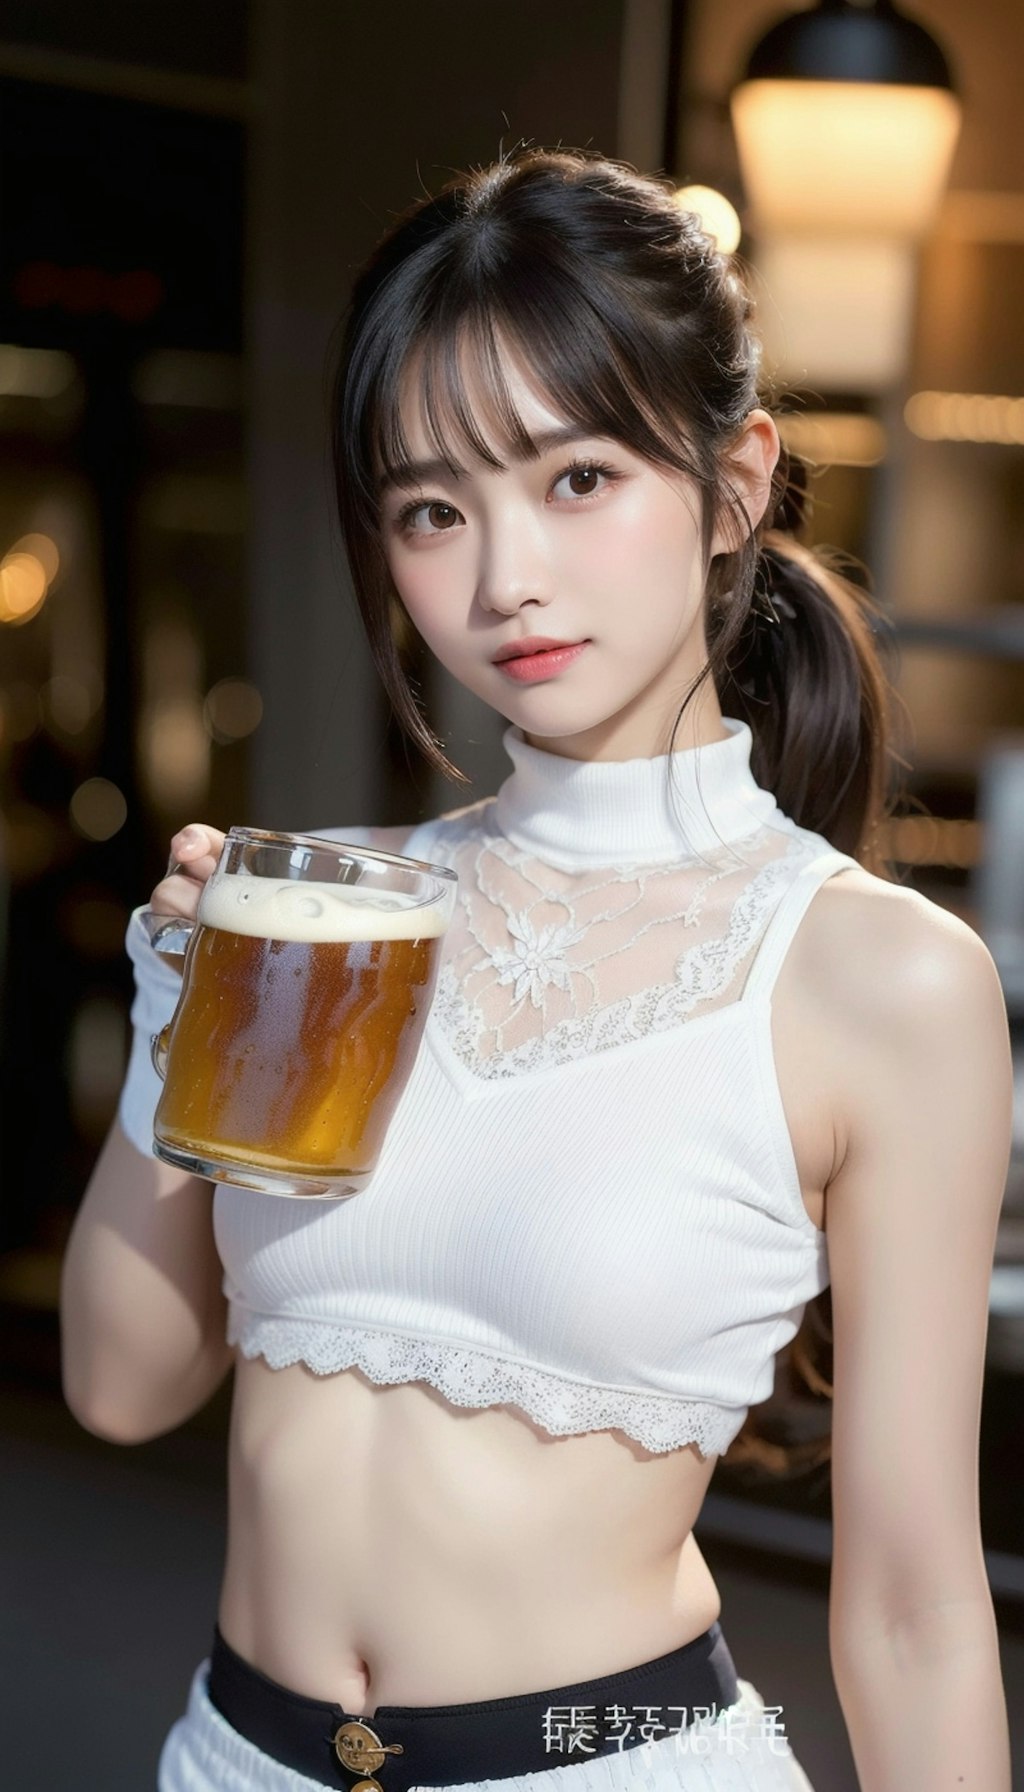 ビール59